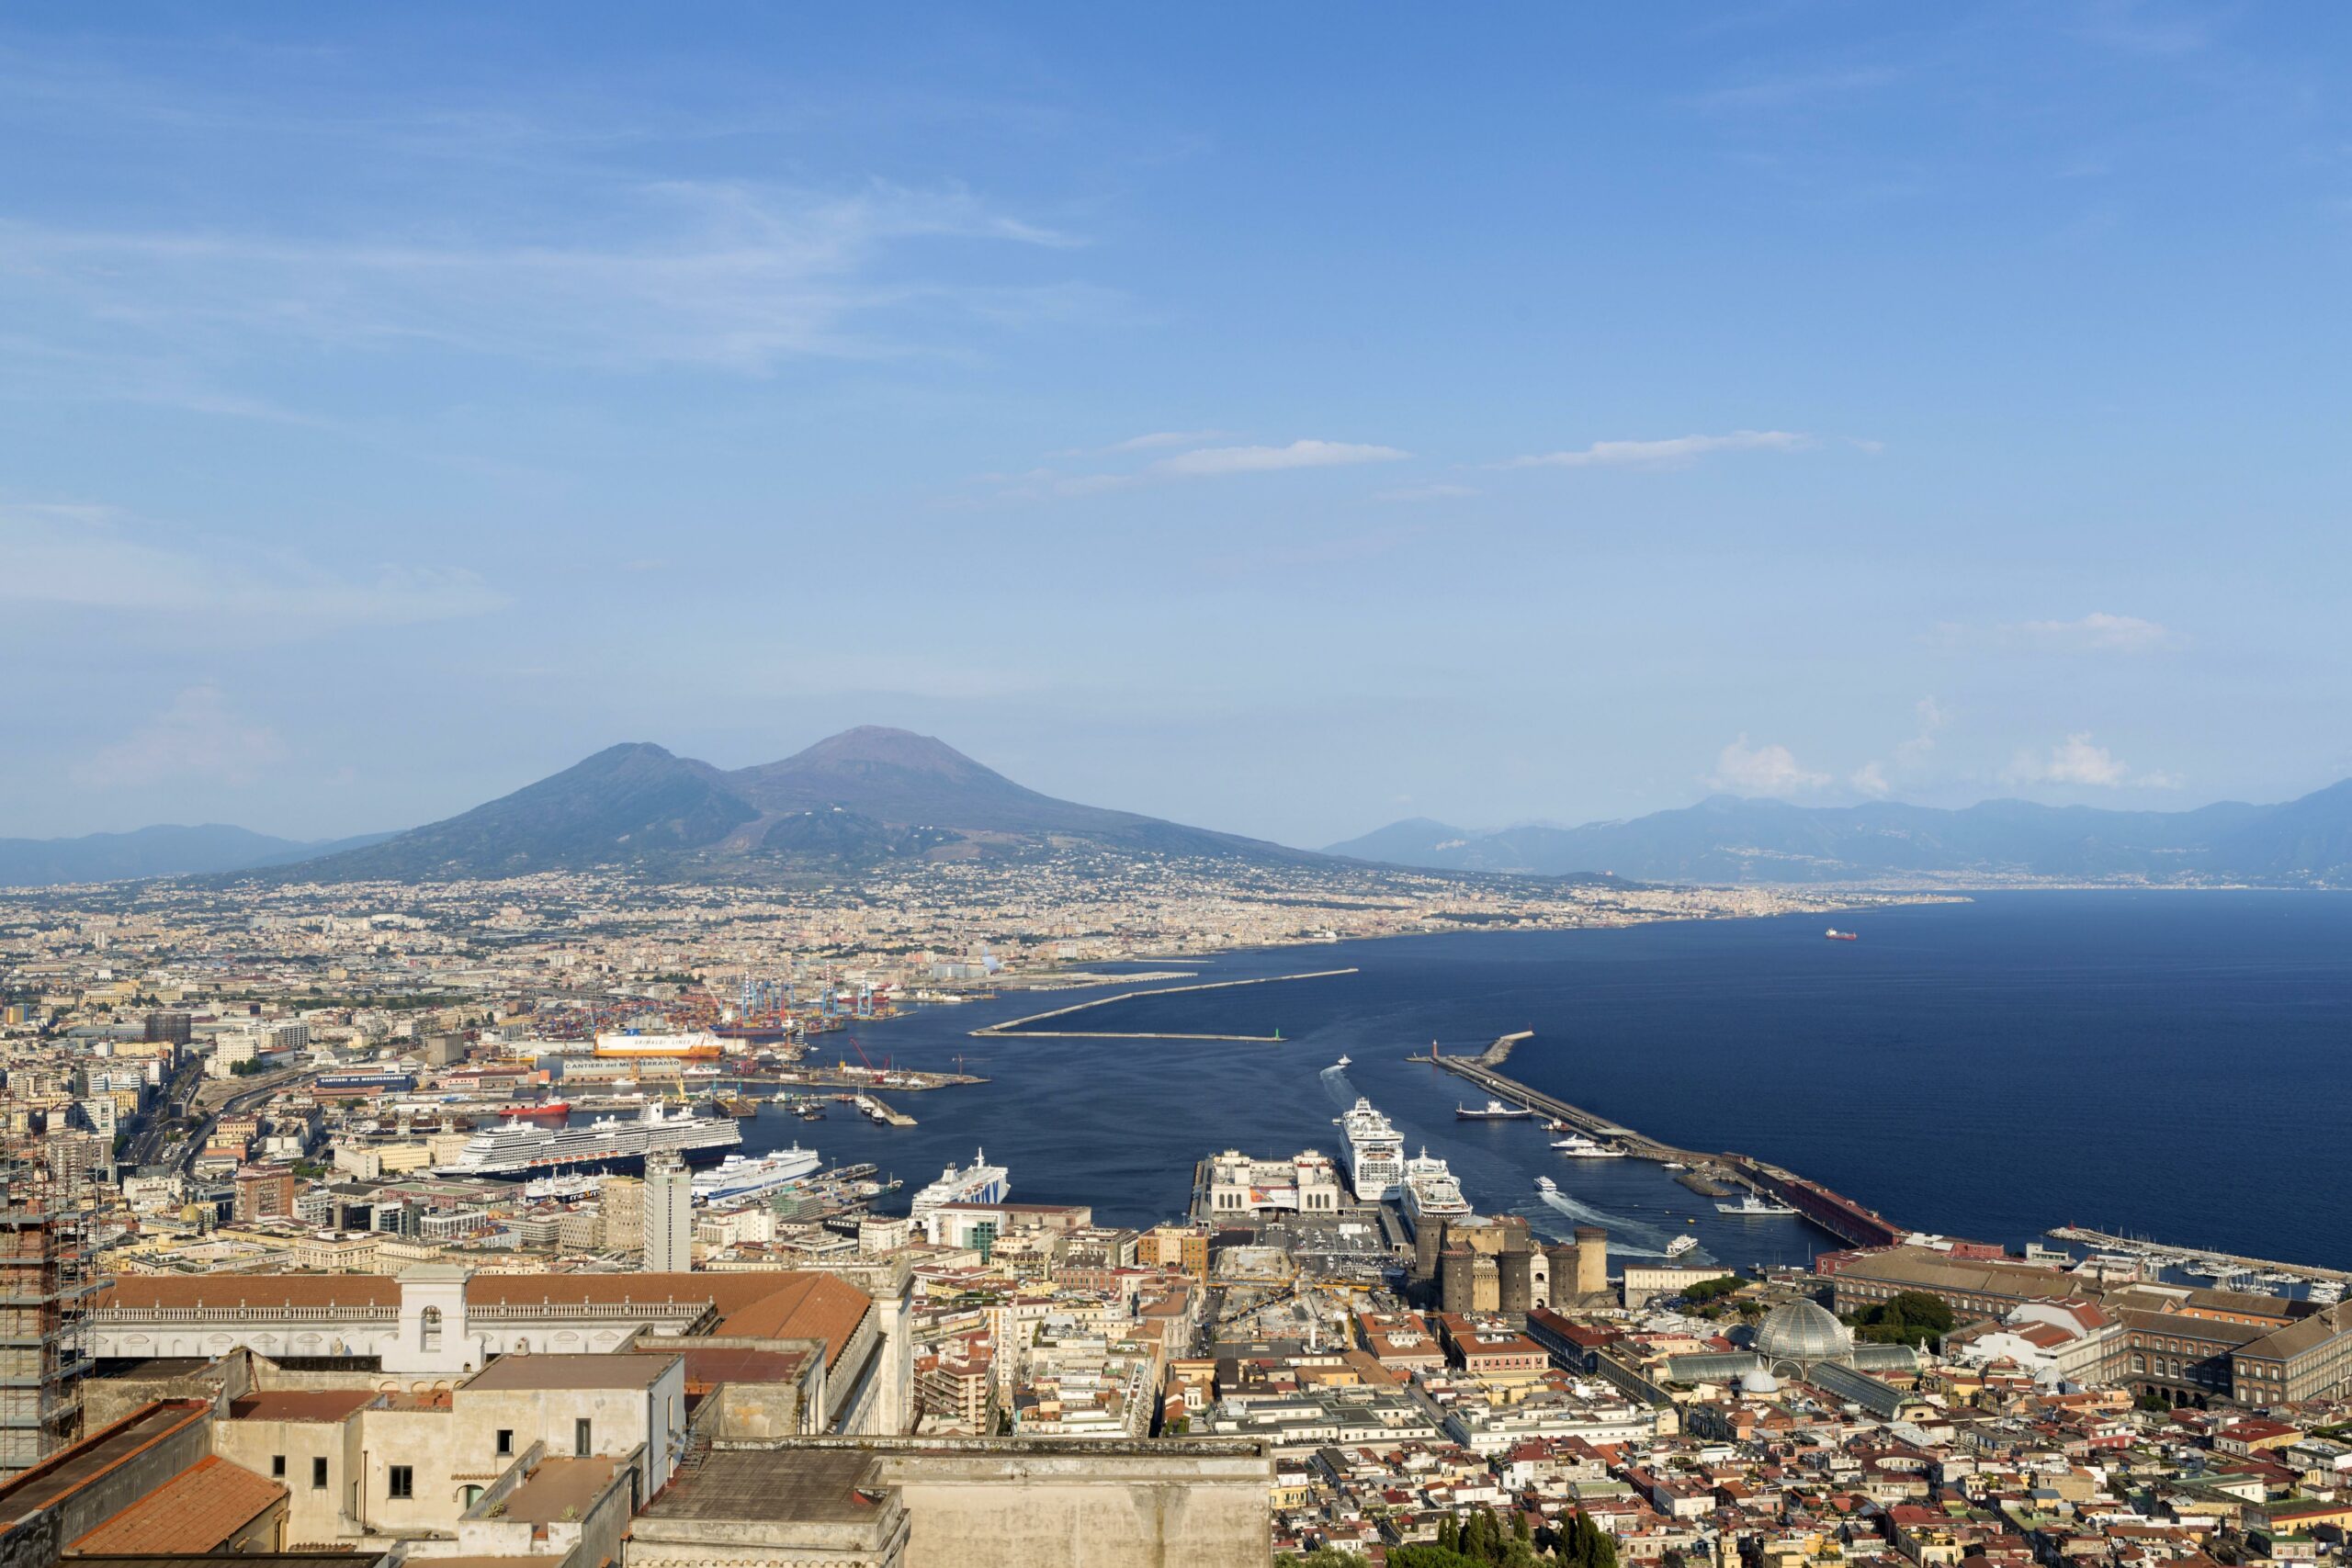 Blick auf Neapel. Viele Menschen sind nach einem Erdbeben auf die Straßen gelaufen.